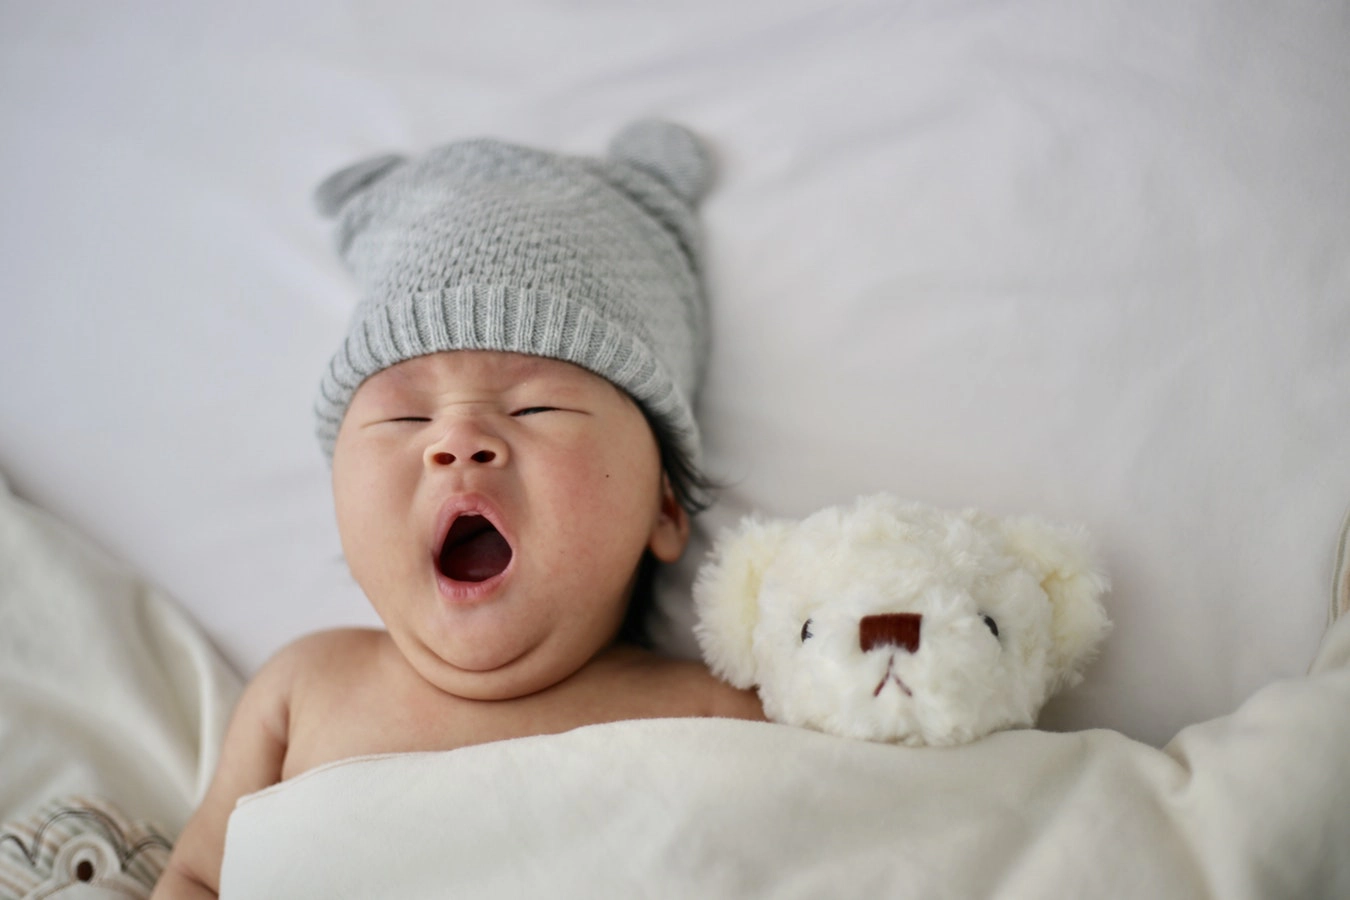 Chi tiết bảng thời gian ngủ của trẻ sơ sinh hiện nay - congtynemthangloi.com